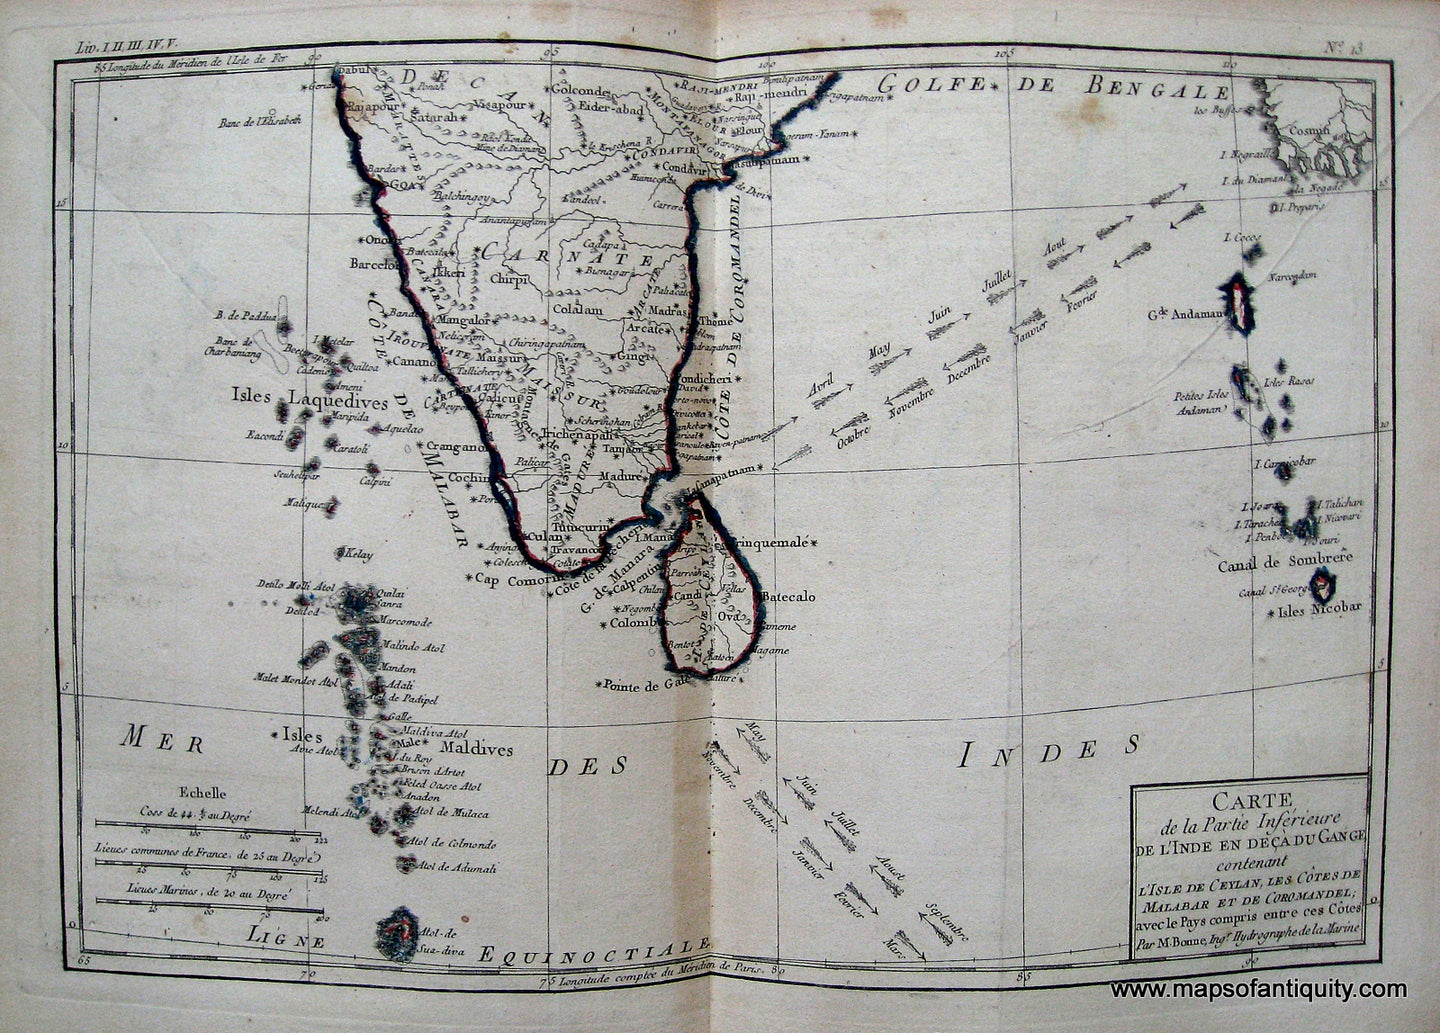 Antique-Hand-Colored-Map-Carte-de-la-Partie-Inferieure-de-l'Inde-en-de-ca-du-Gange-etc.-Asia-India-1780-Raynal-and-Bonne-Maps-Of-Antiquity